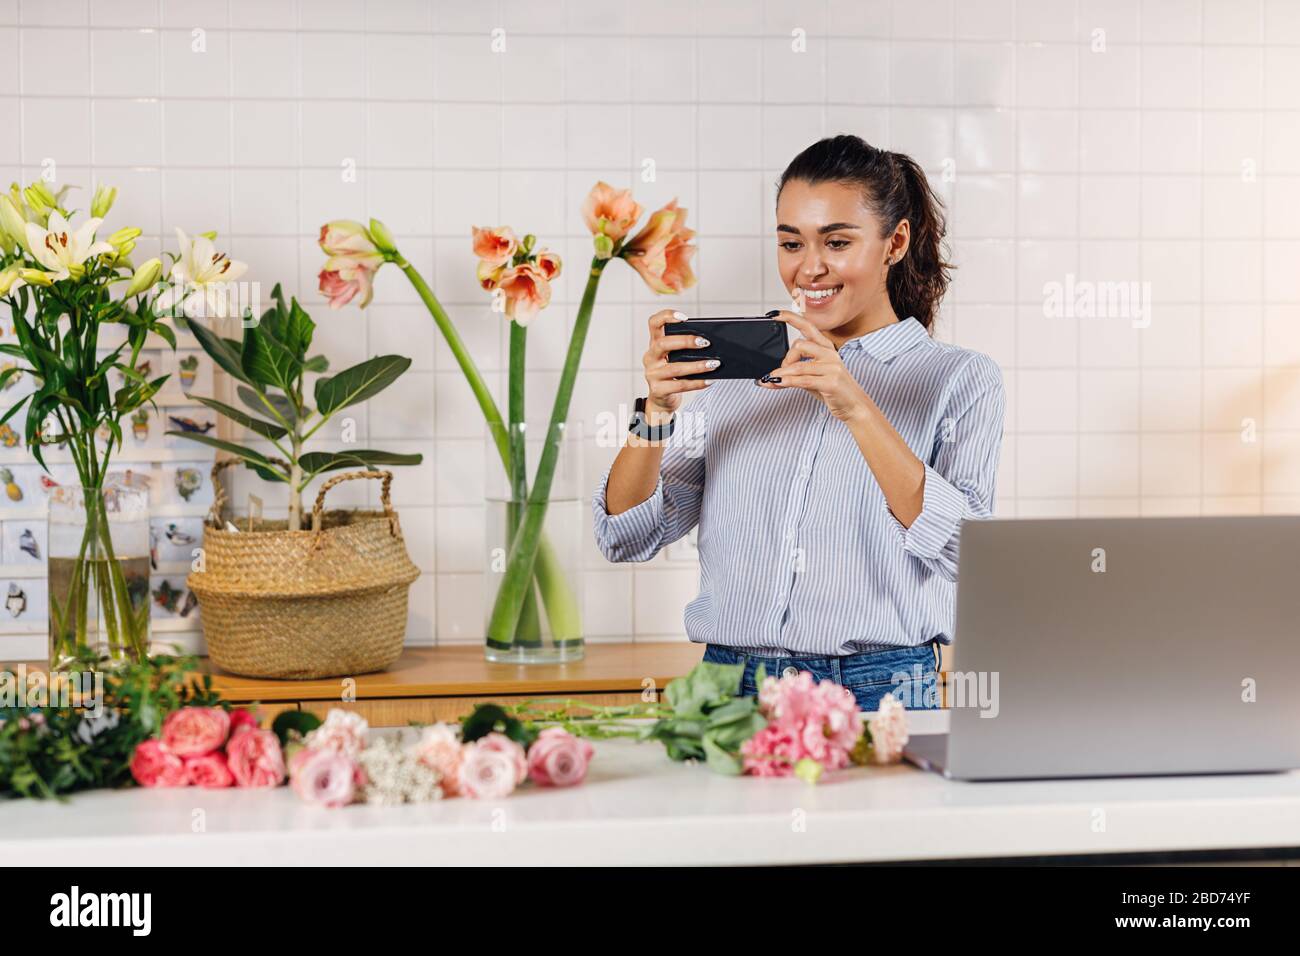 Lächelnde Frau, die Fotos auf einem Smartphone macht. Flower Shop-Besitzer, die Inhalte für ihren Online-Shop erstellen. Stockfoto